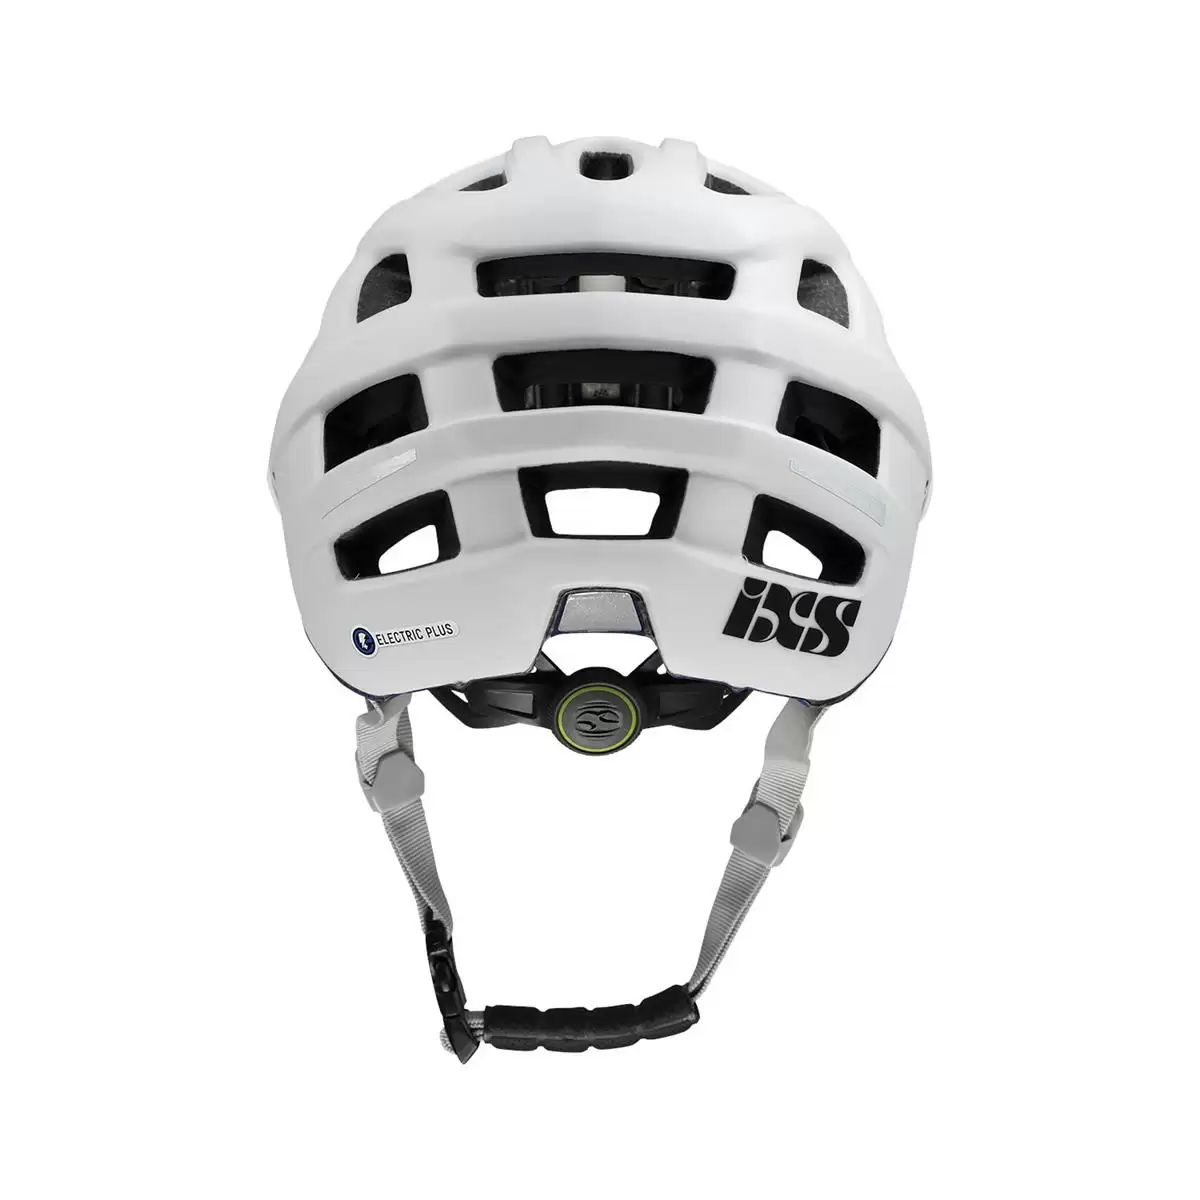 Henduro Helmet Trail Evo E-Bike Edition White Size M/L (58-62cm) #3